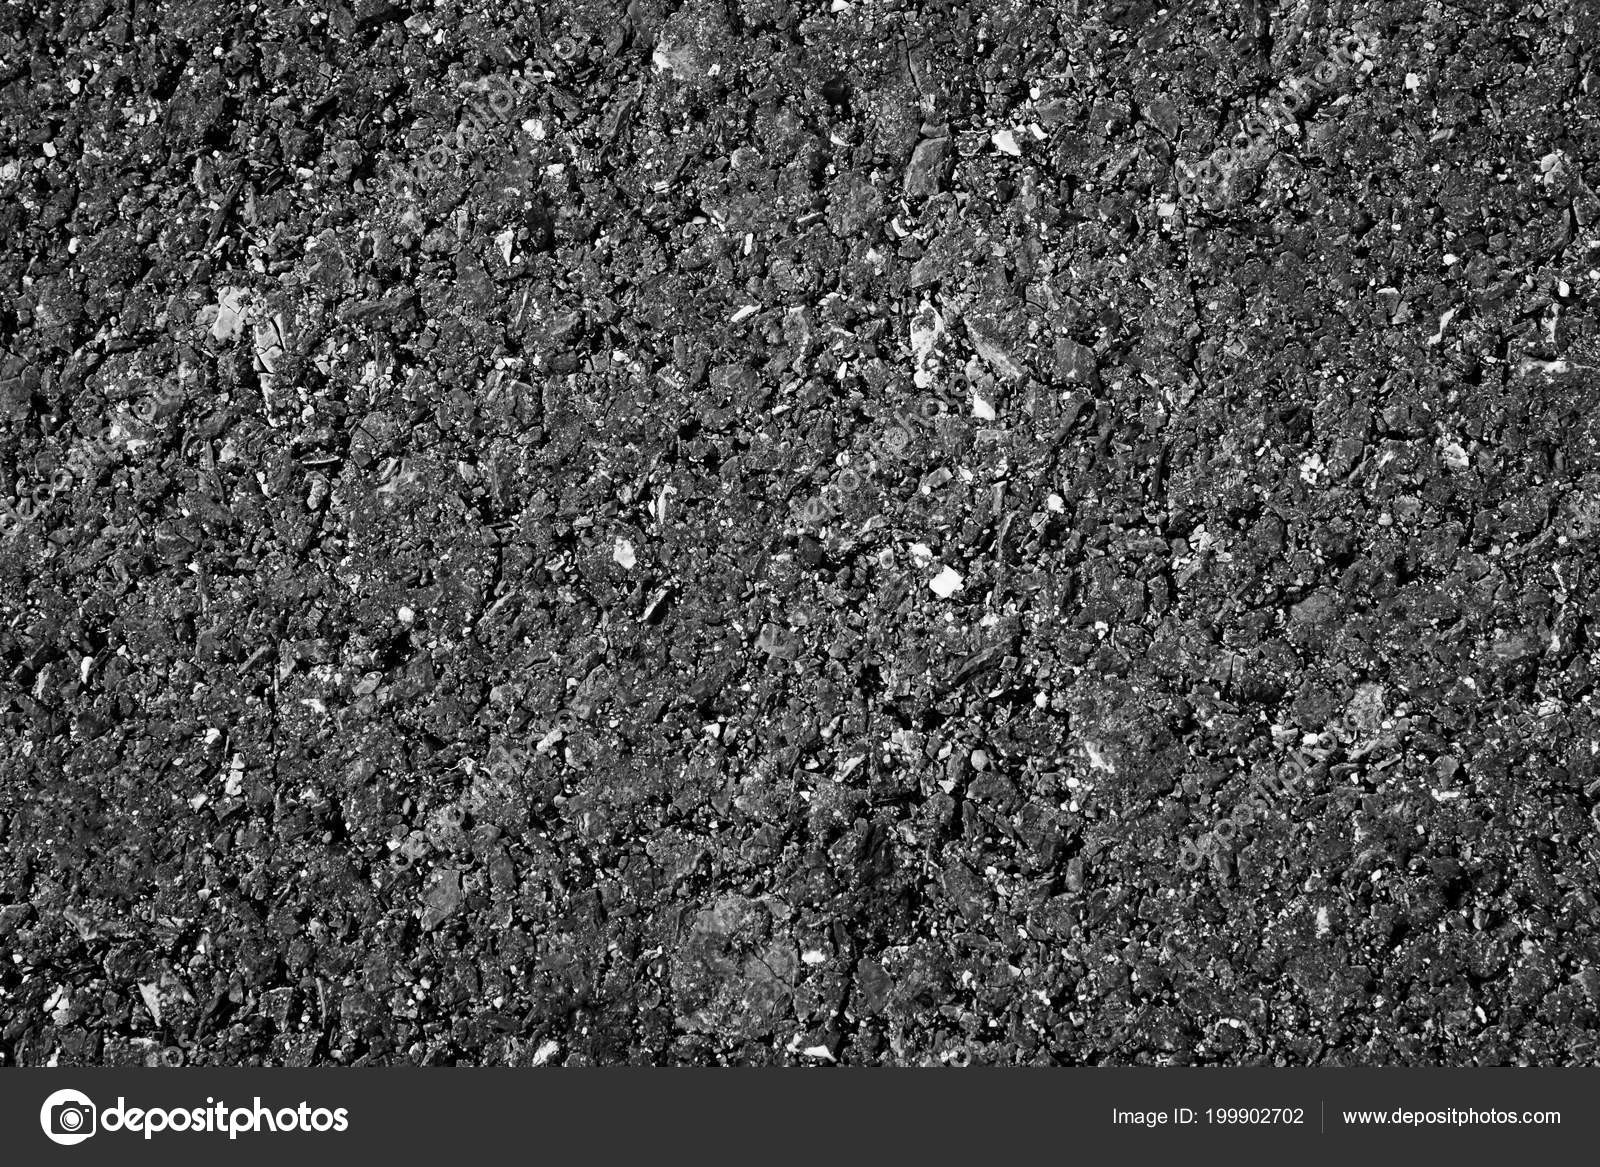 stone asphalt texture